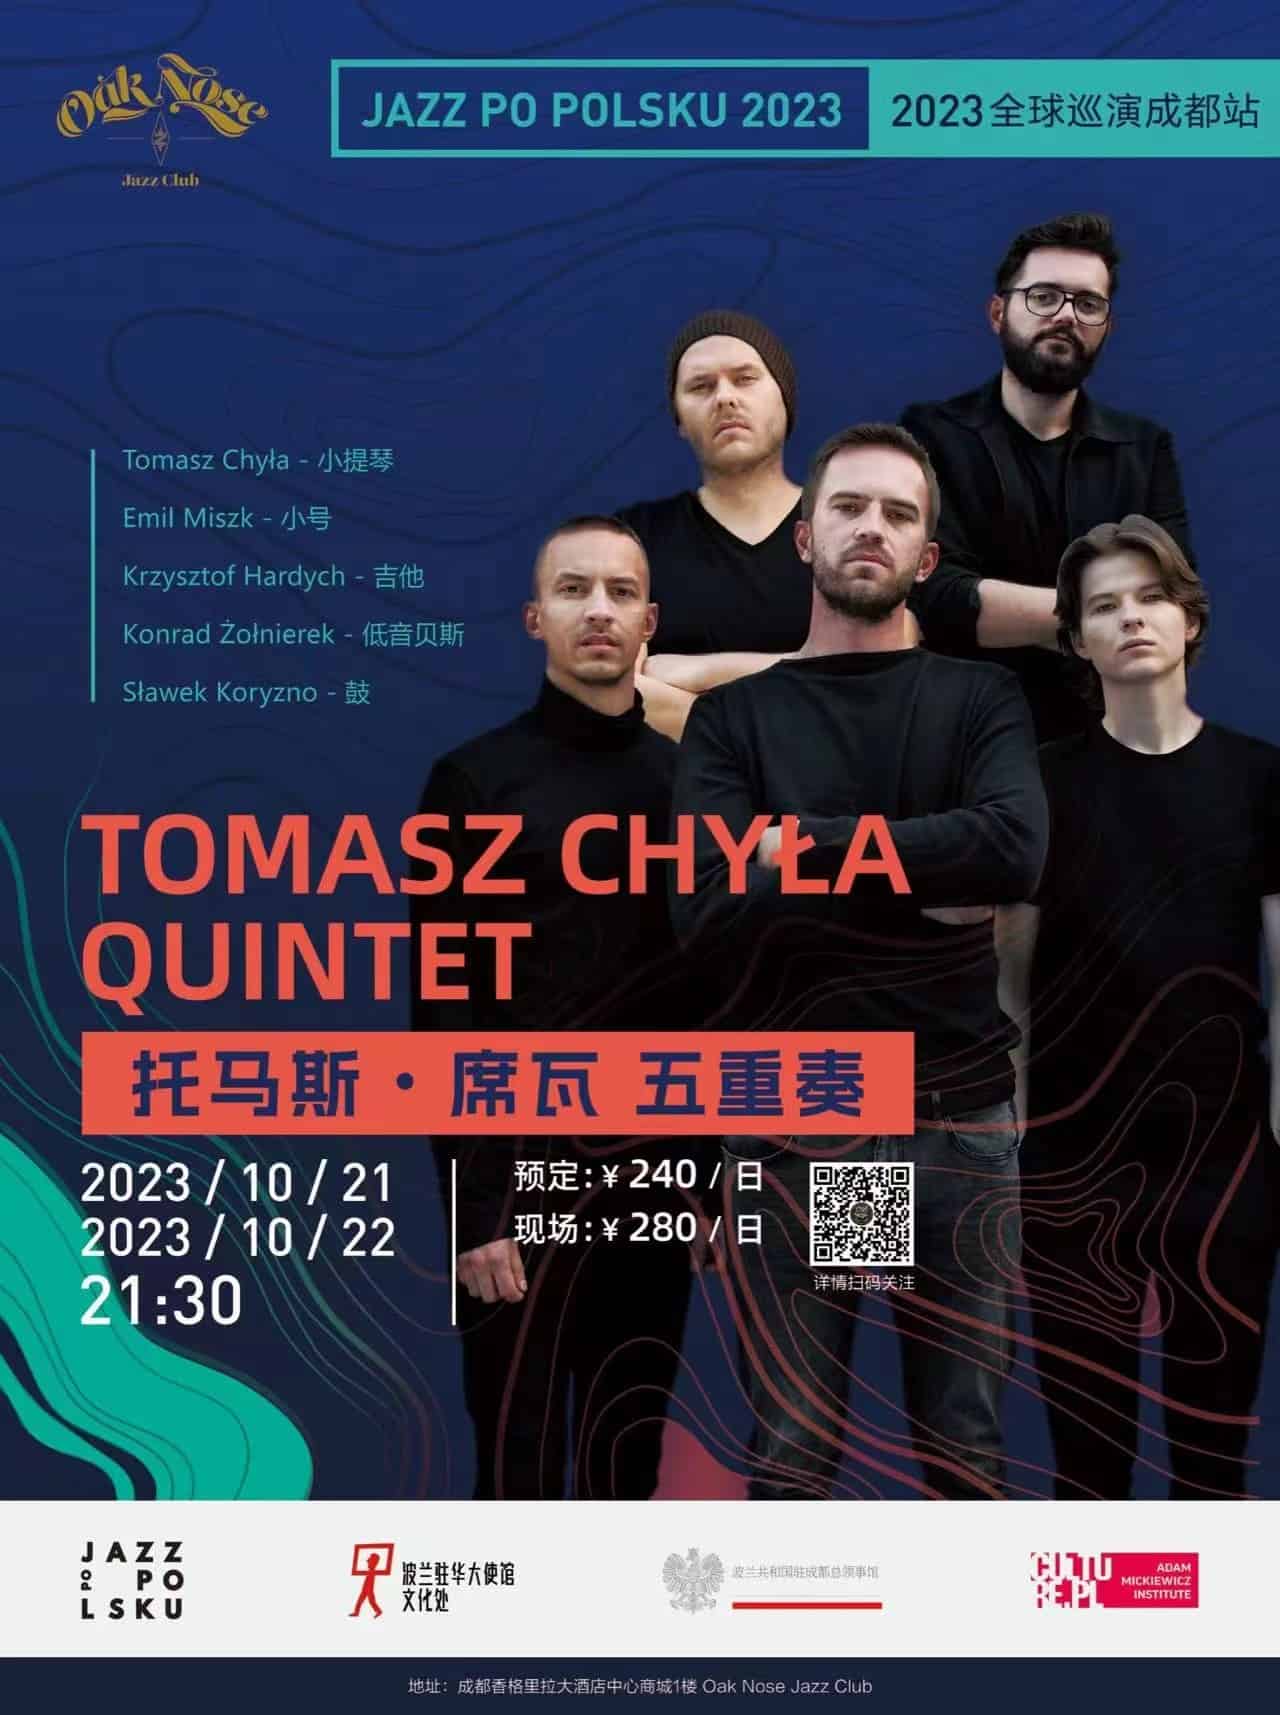 Tomasz Chyla Quintet jazz chengdu chengdu expat 1